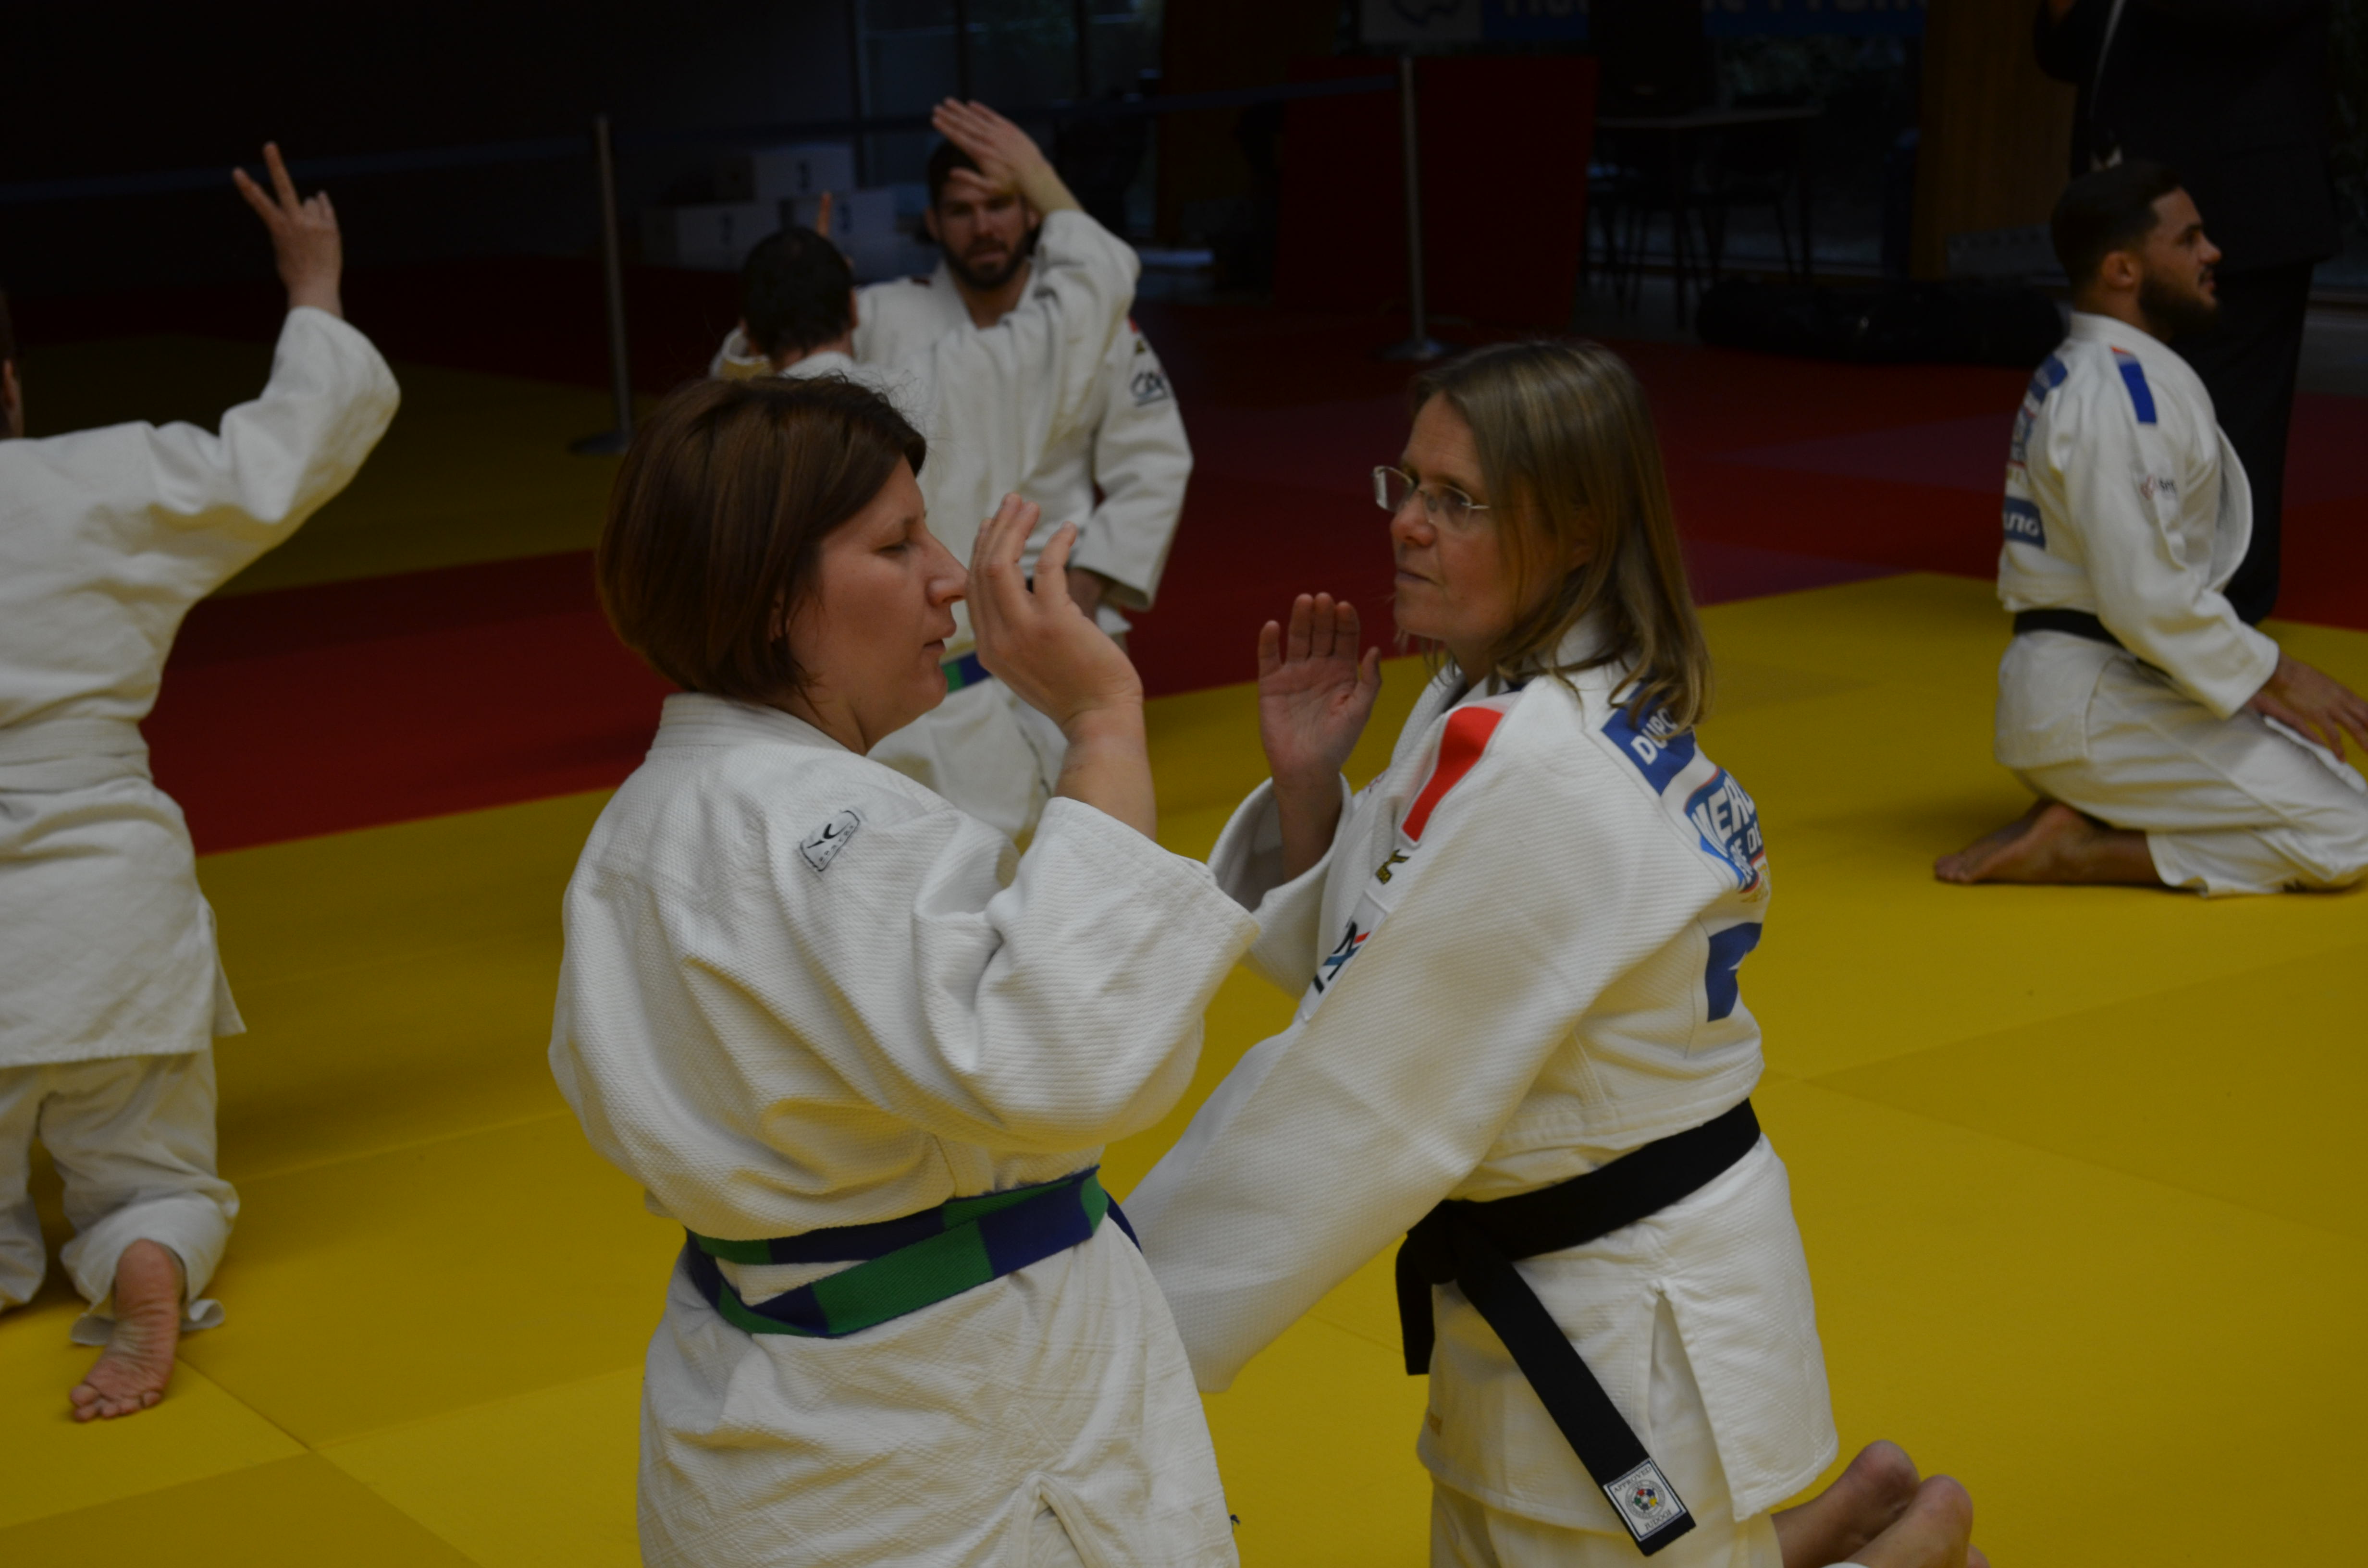 Martine Dupond (ex-coach sélection féminine Judo) : « Mettre les féminines au même niveau que les masculins »